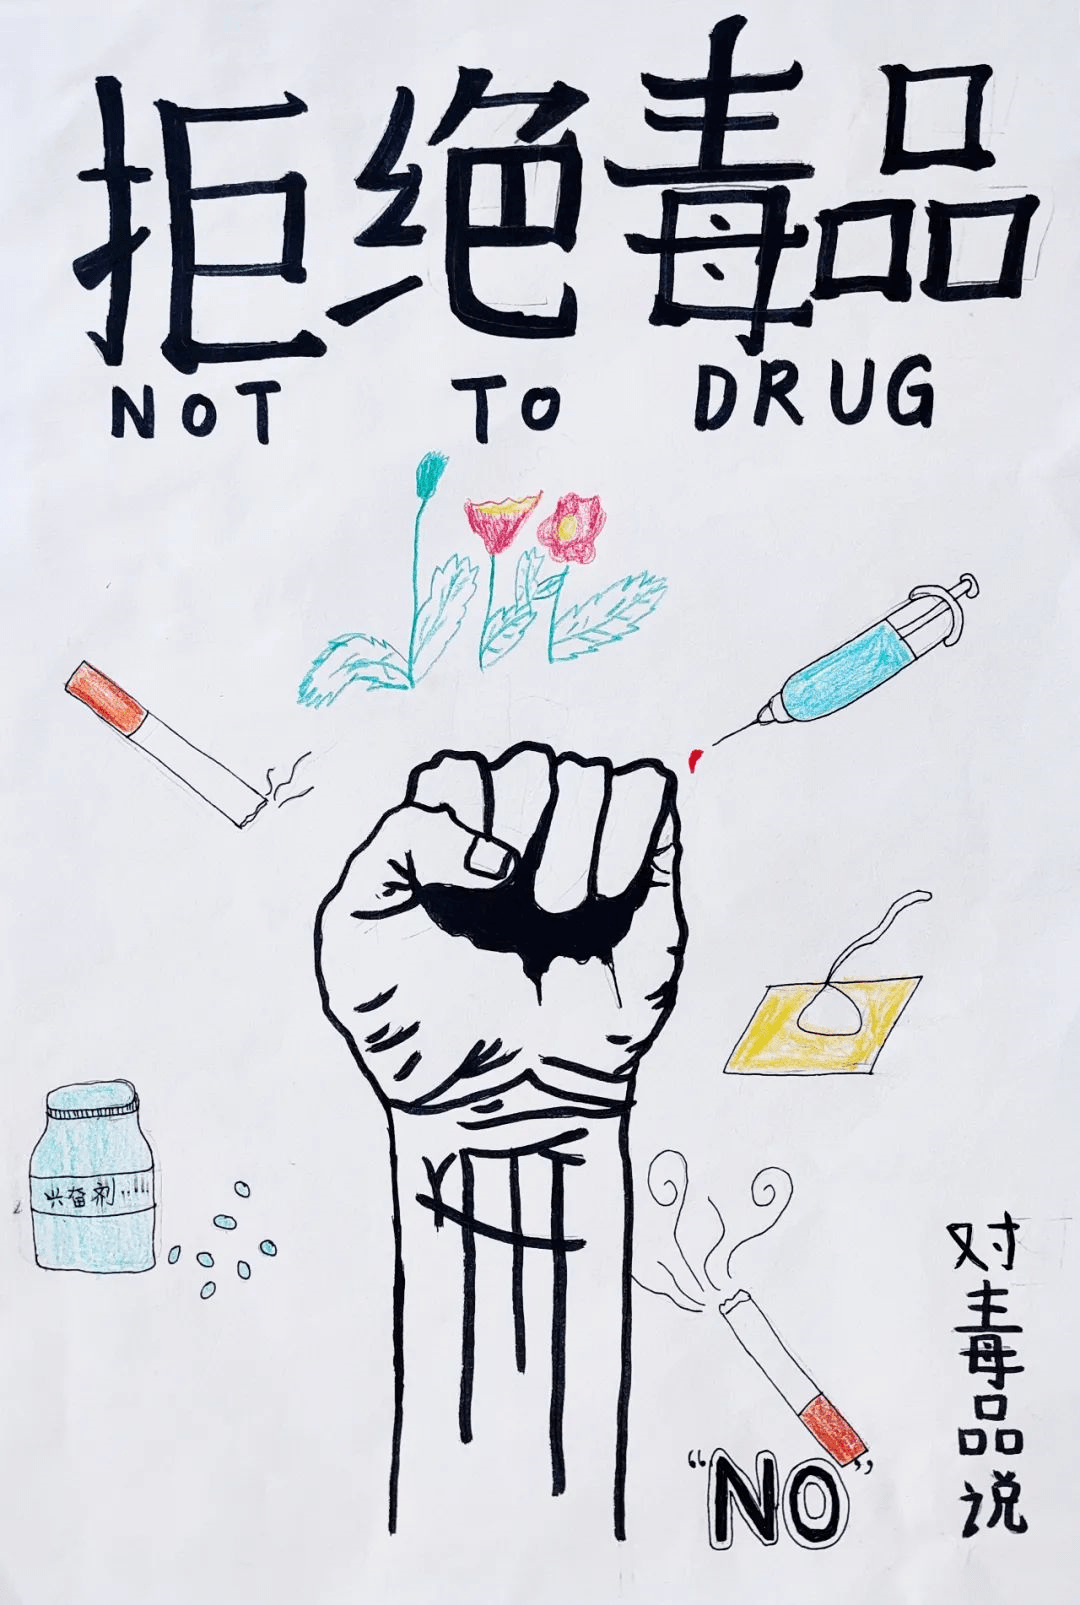 毒品的画法图片